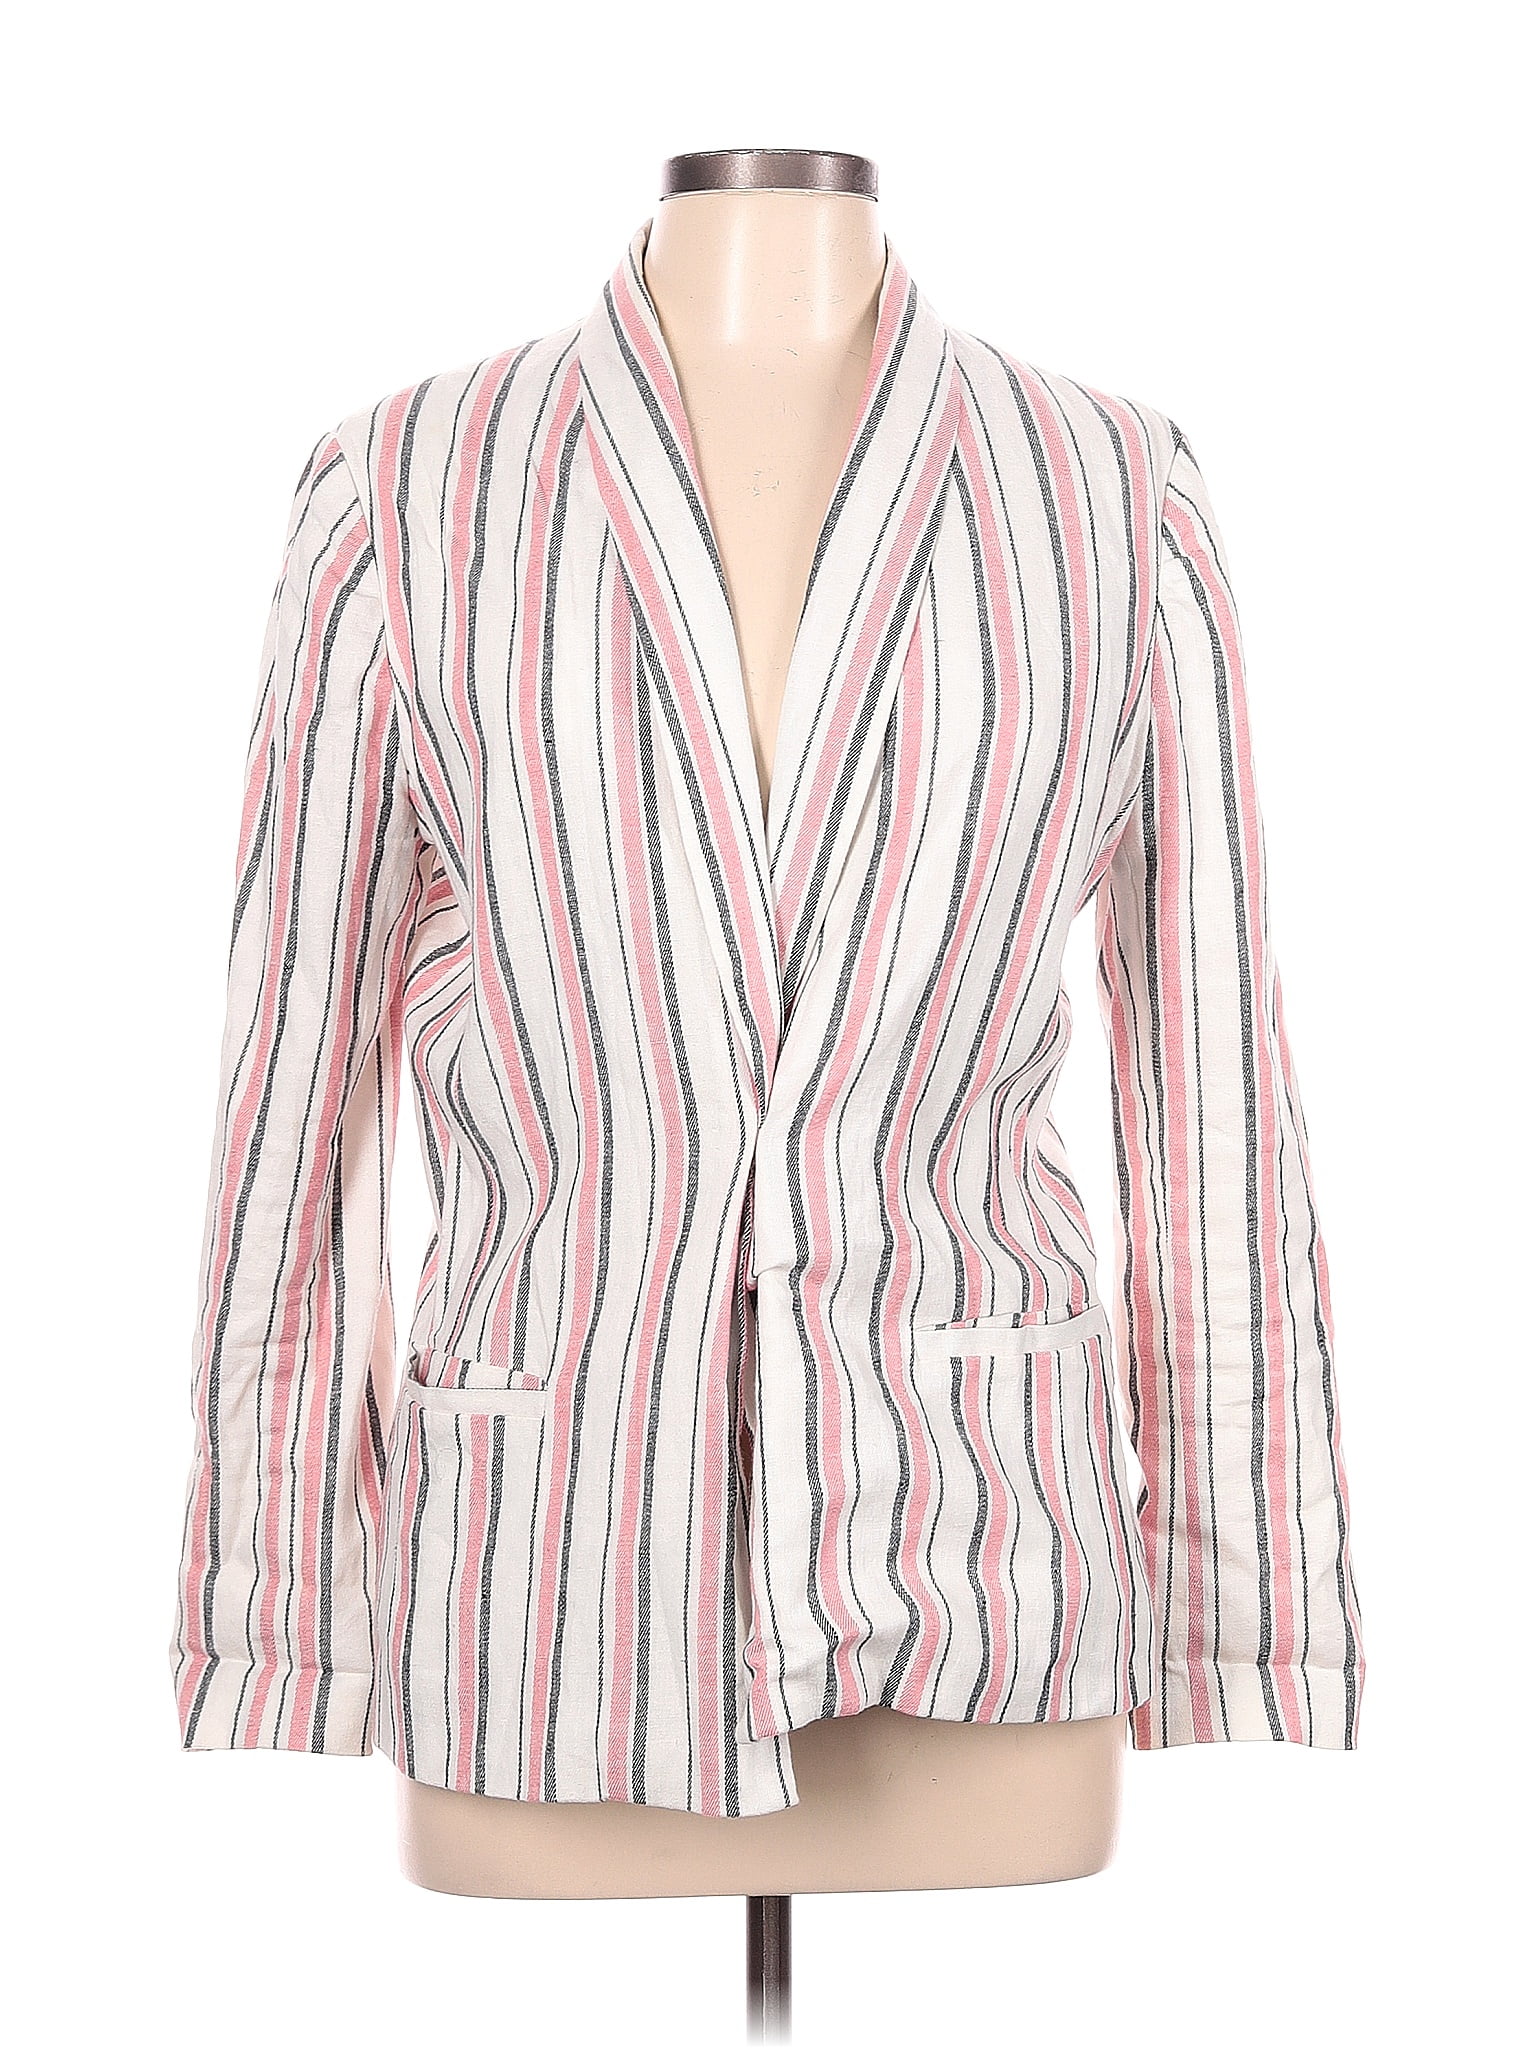 Adrienne Vittadini Stripes White Blazer Size L - 81% off